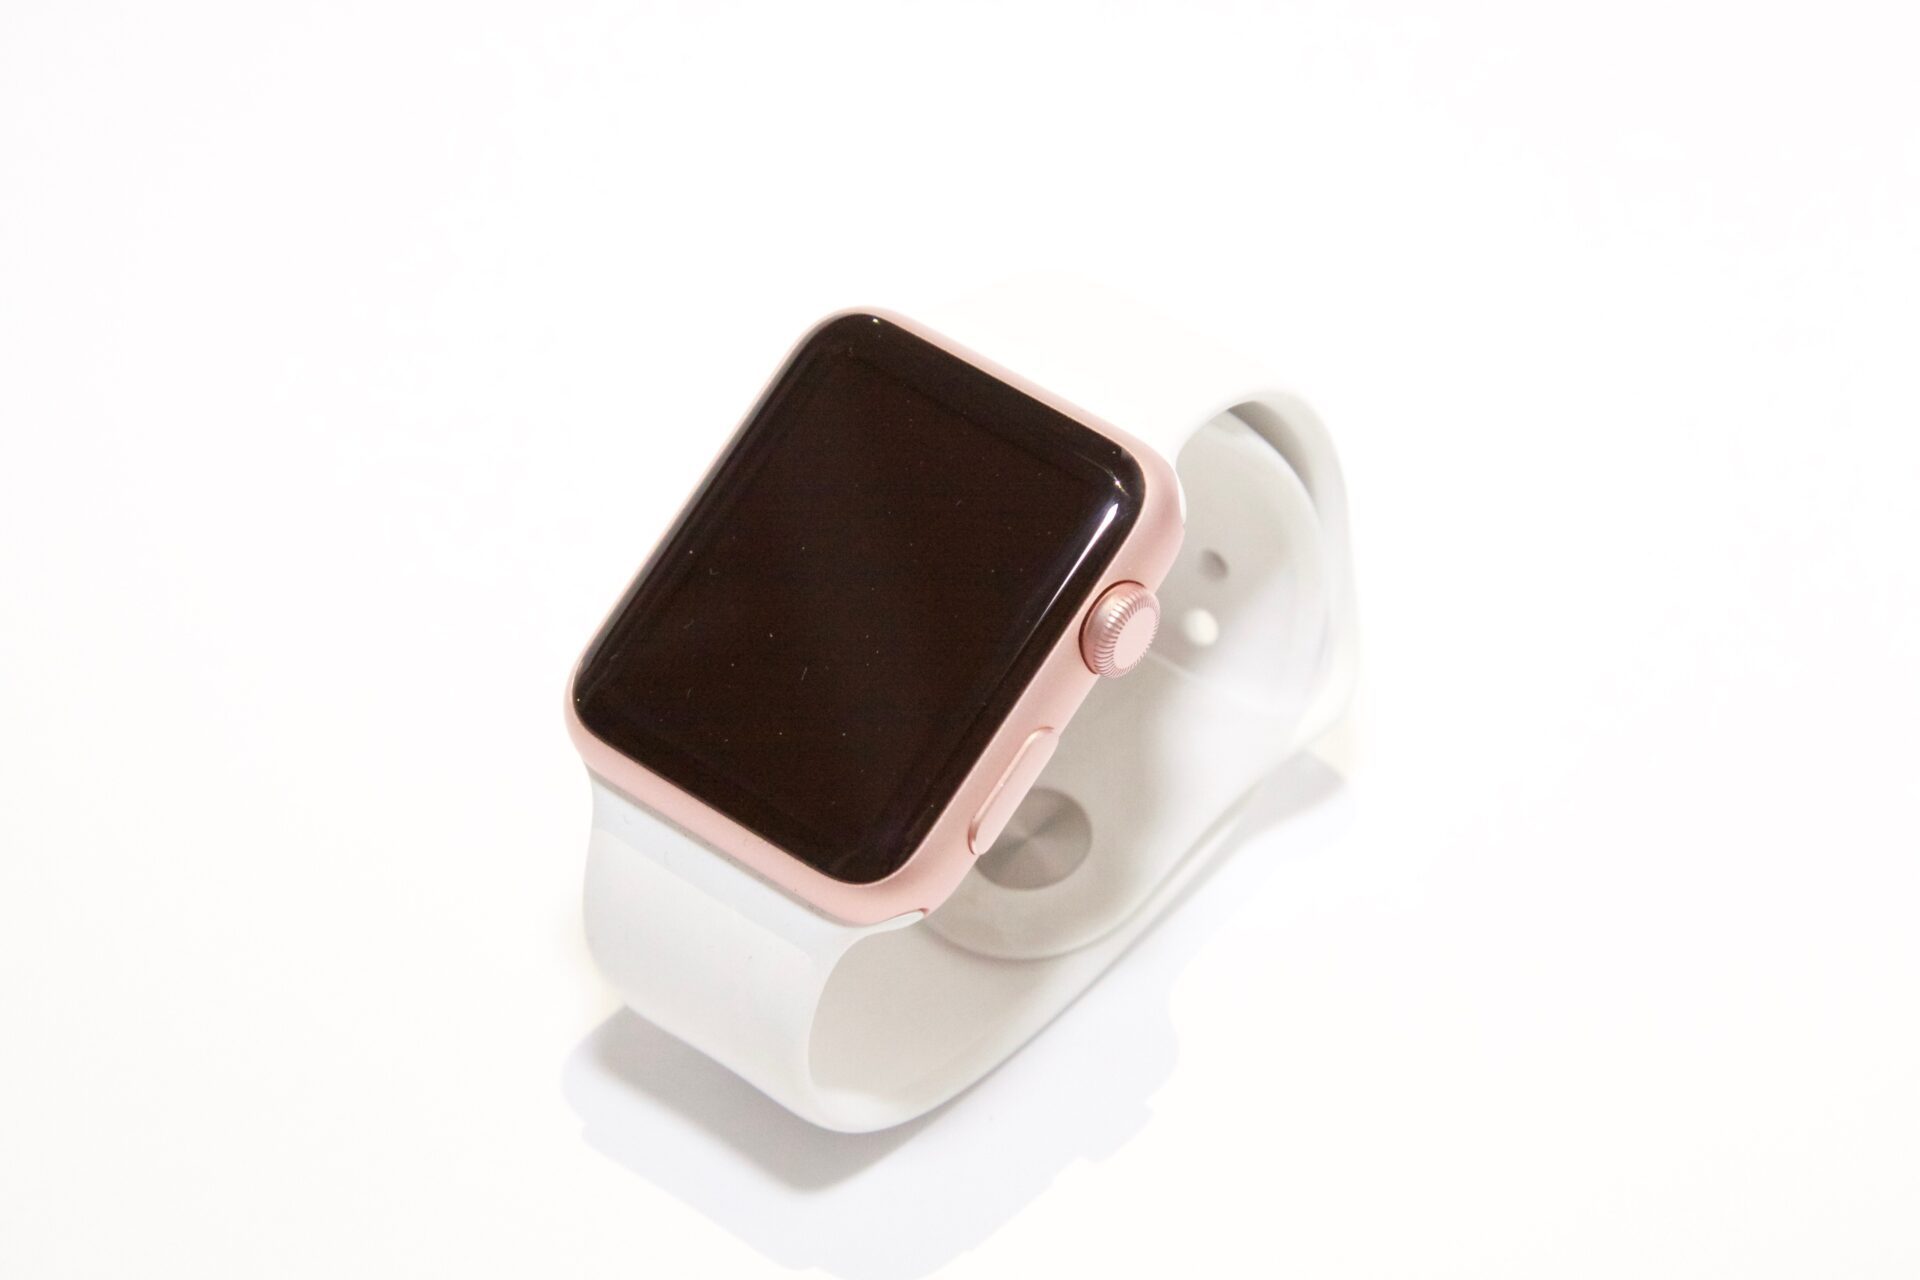 Apple Watch Series 7 : La montre connectée est enfin à prix réduit,  profitez-en avant la rupture 